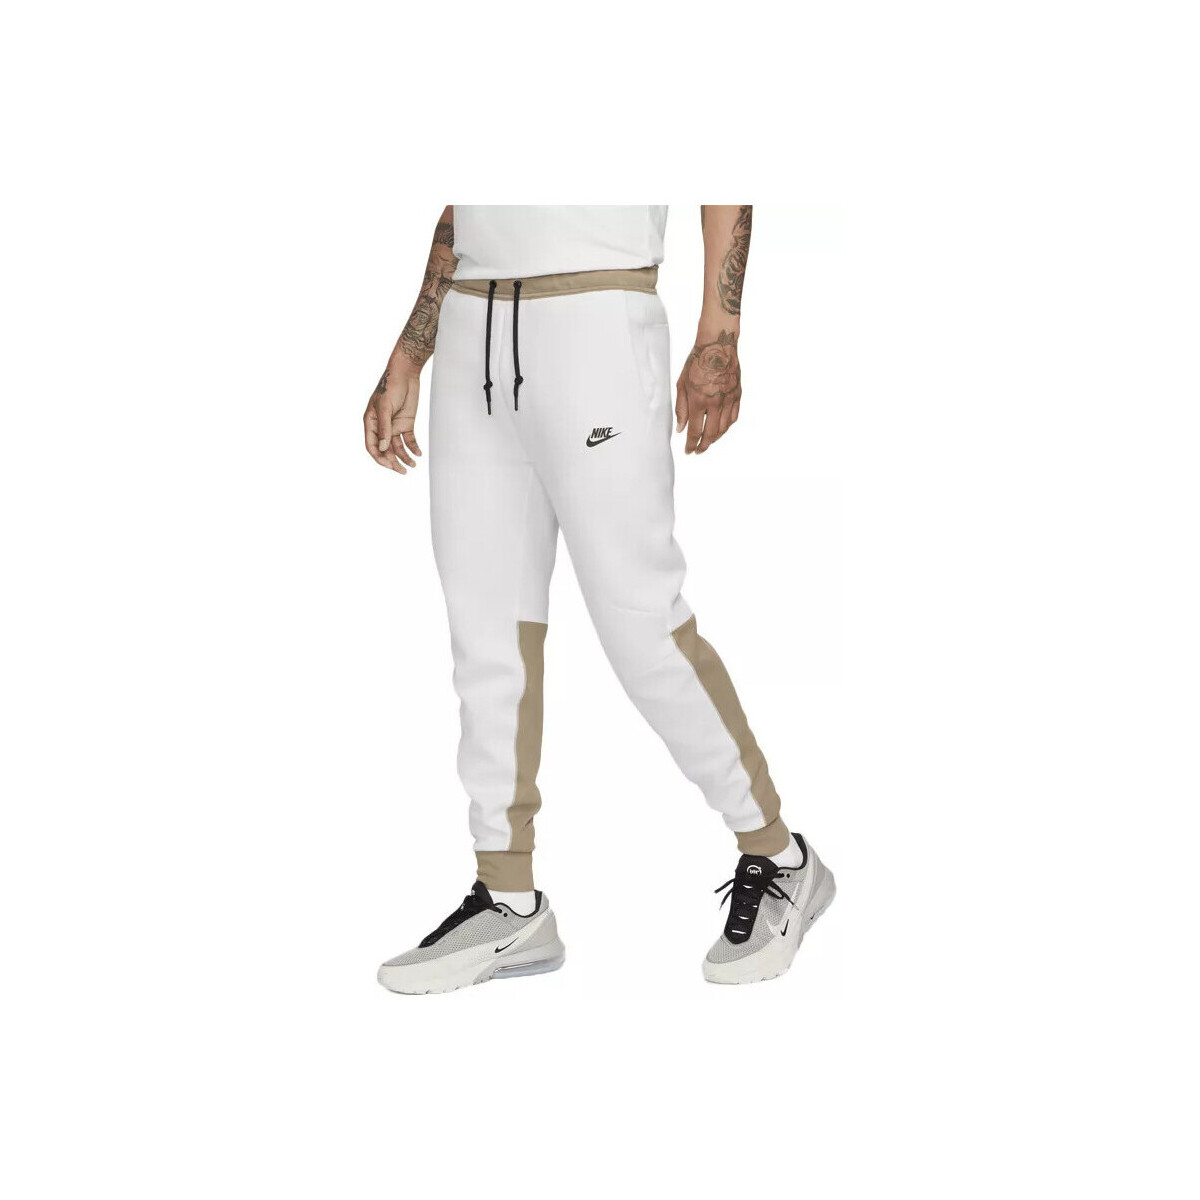 Vêtements Homme Pantalons de survêtement Nike TECH FLEECE Beige